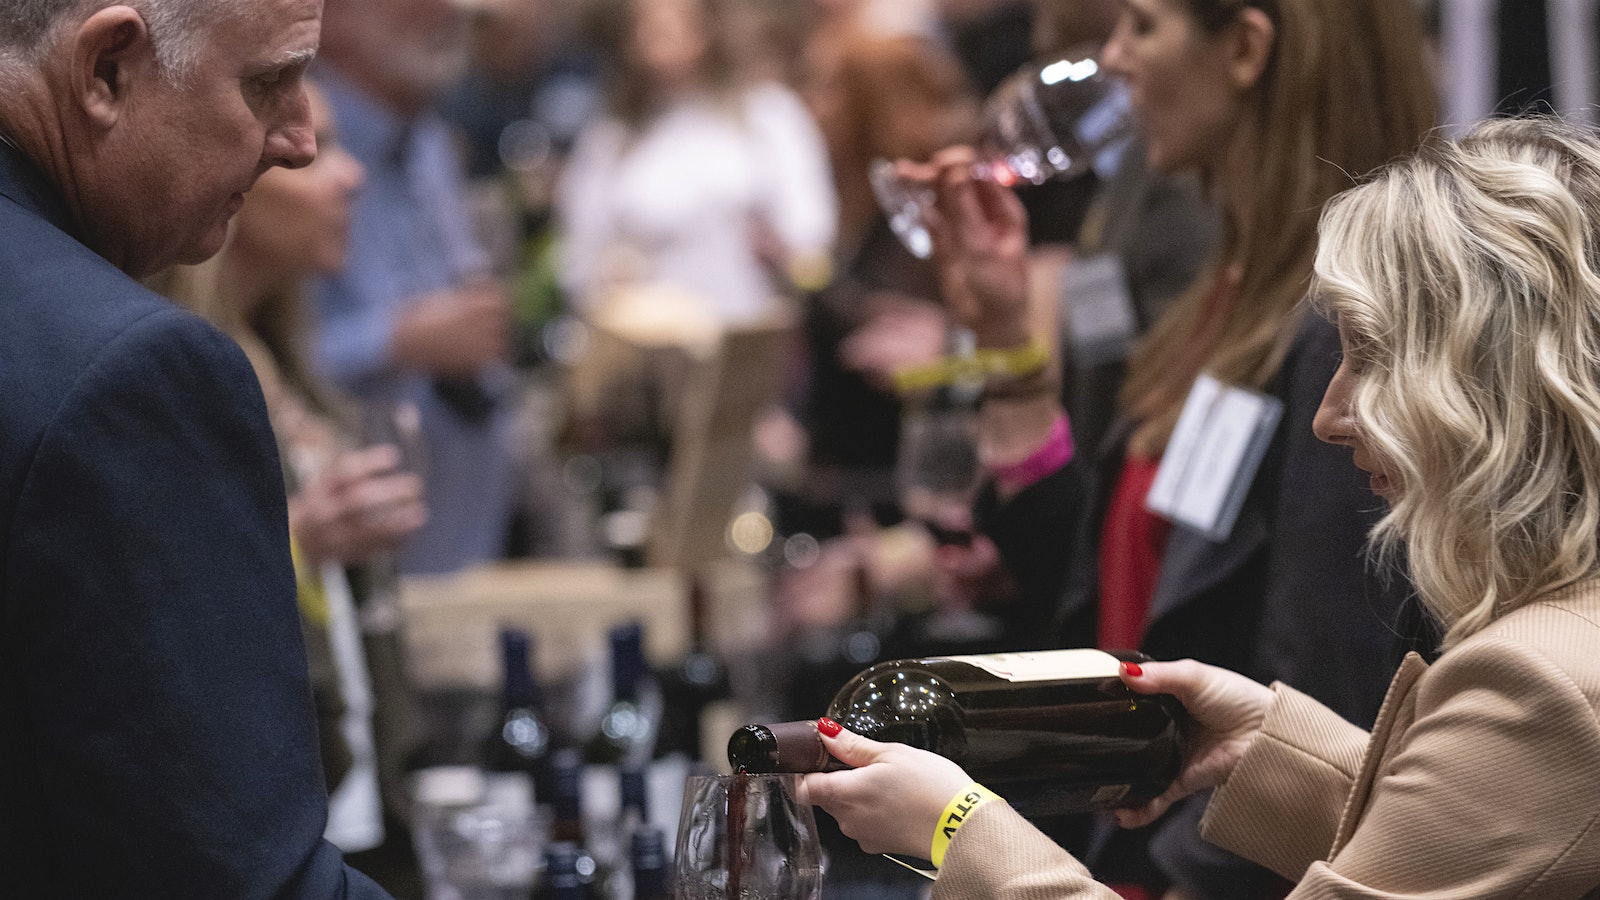 Más de 1,000 participantes disfrutaron de más de 200 vinos de todo el mundo, todos los cuales obtuvieron una calificación de 90 puntos o más.] 